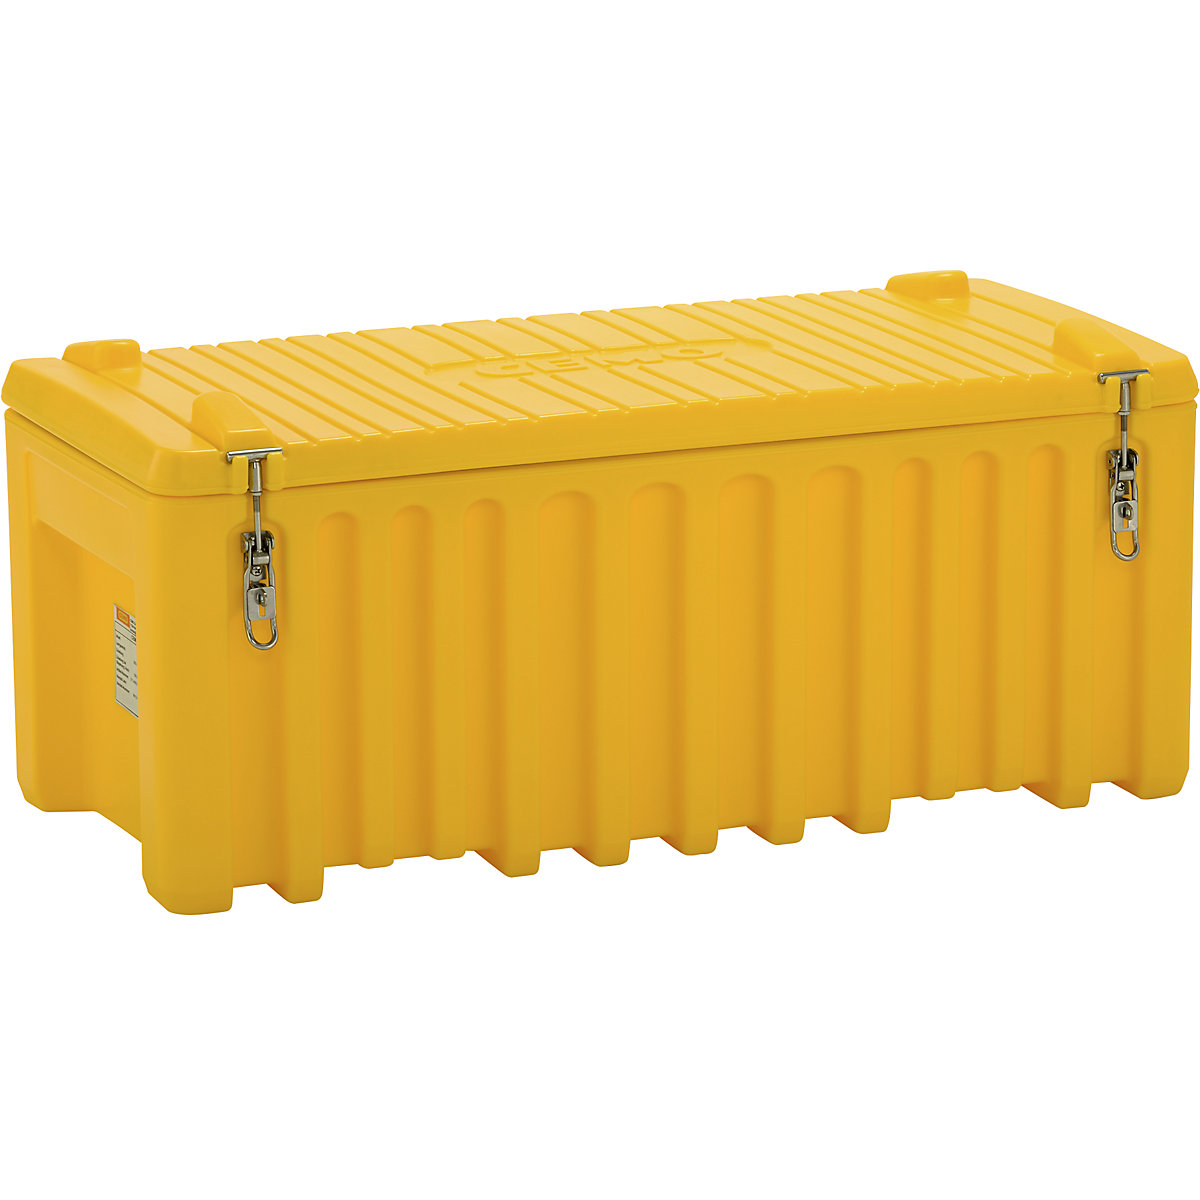 Universalbox aus Polyethylen CEMO, Inhalt 250 l, Traglast 200 kg, gelb